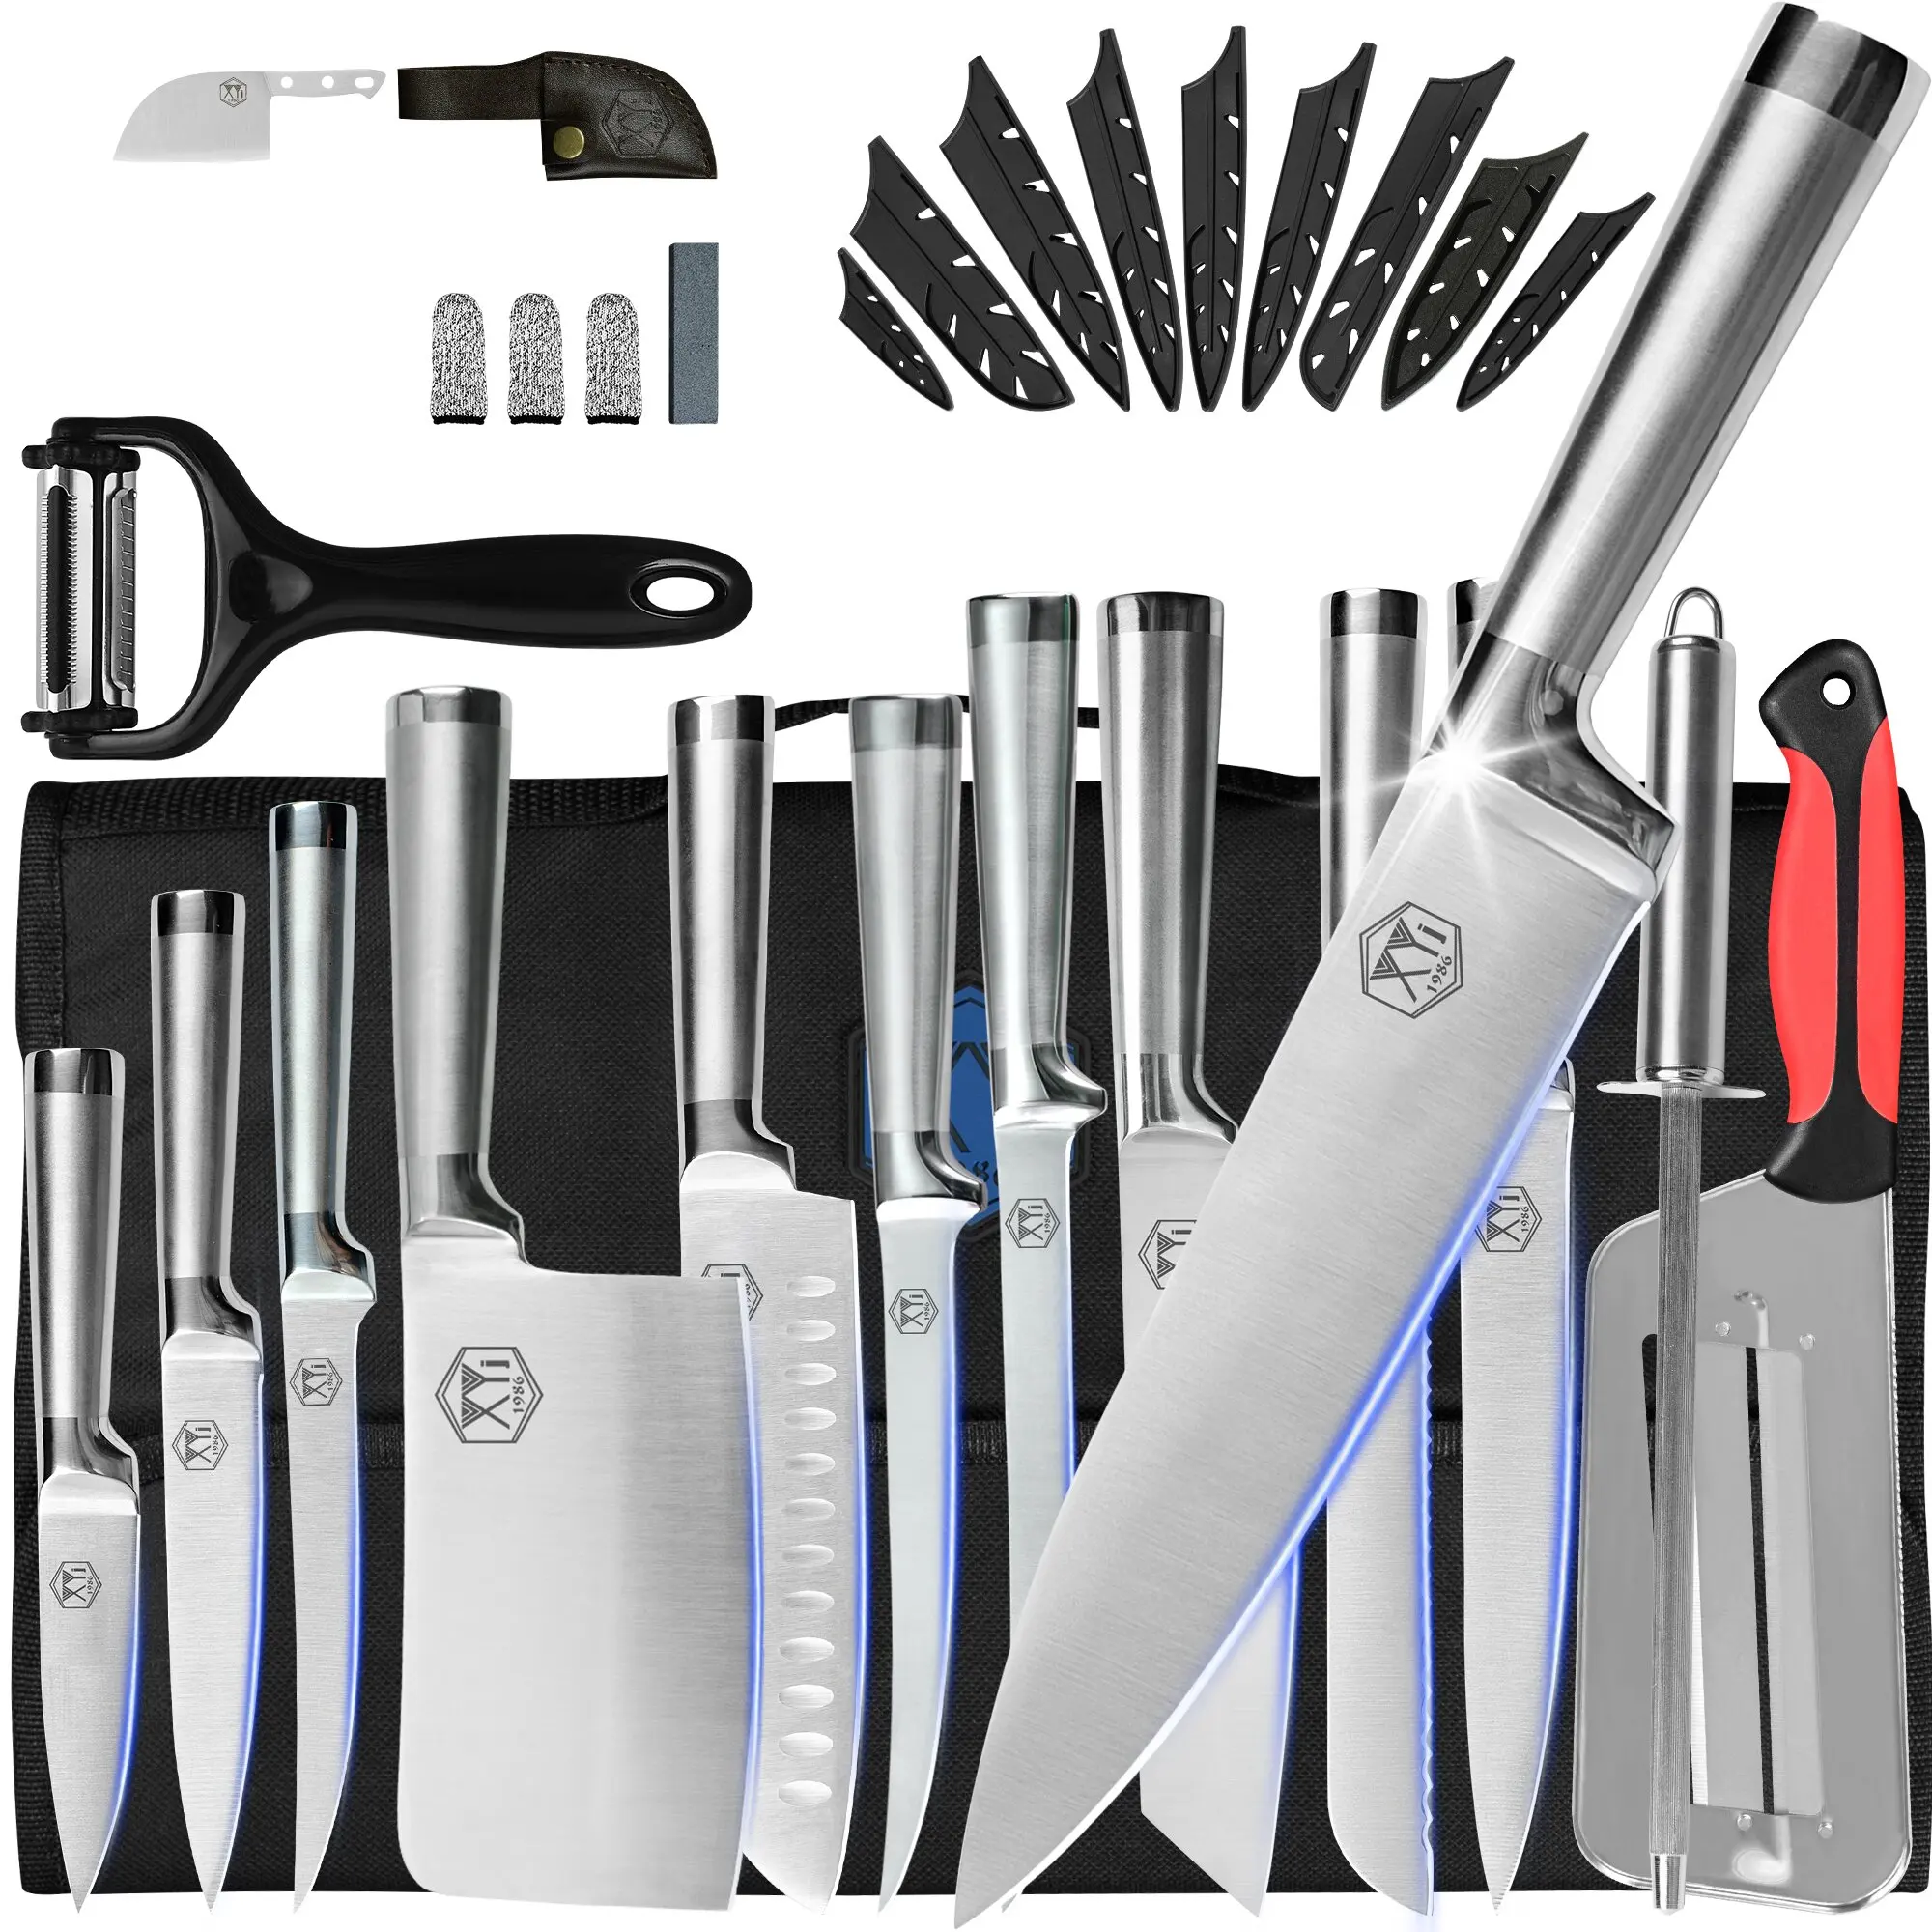 

Набор ножей для шеф-повара XYj профессиональный, комплект из 11 предметов из нержавеющей стали, в подарочной упаковке, в рулоне с сумкой, кухон...